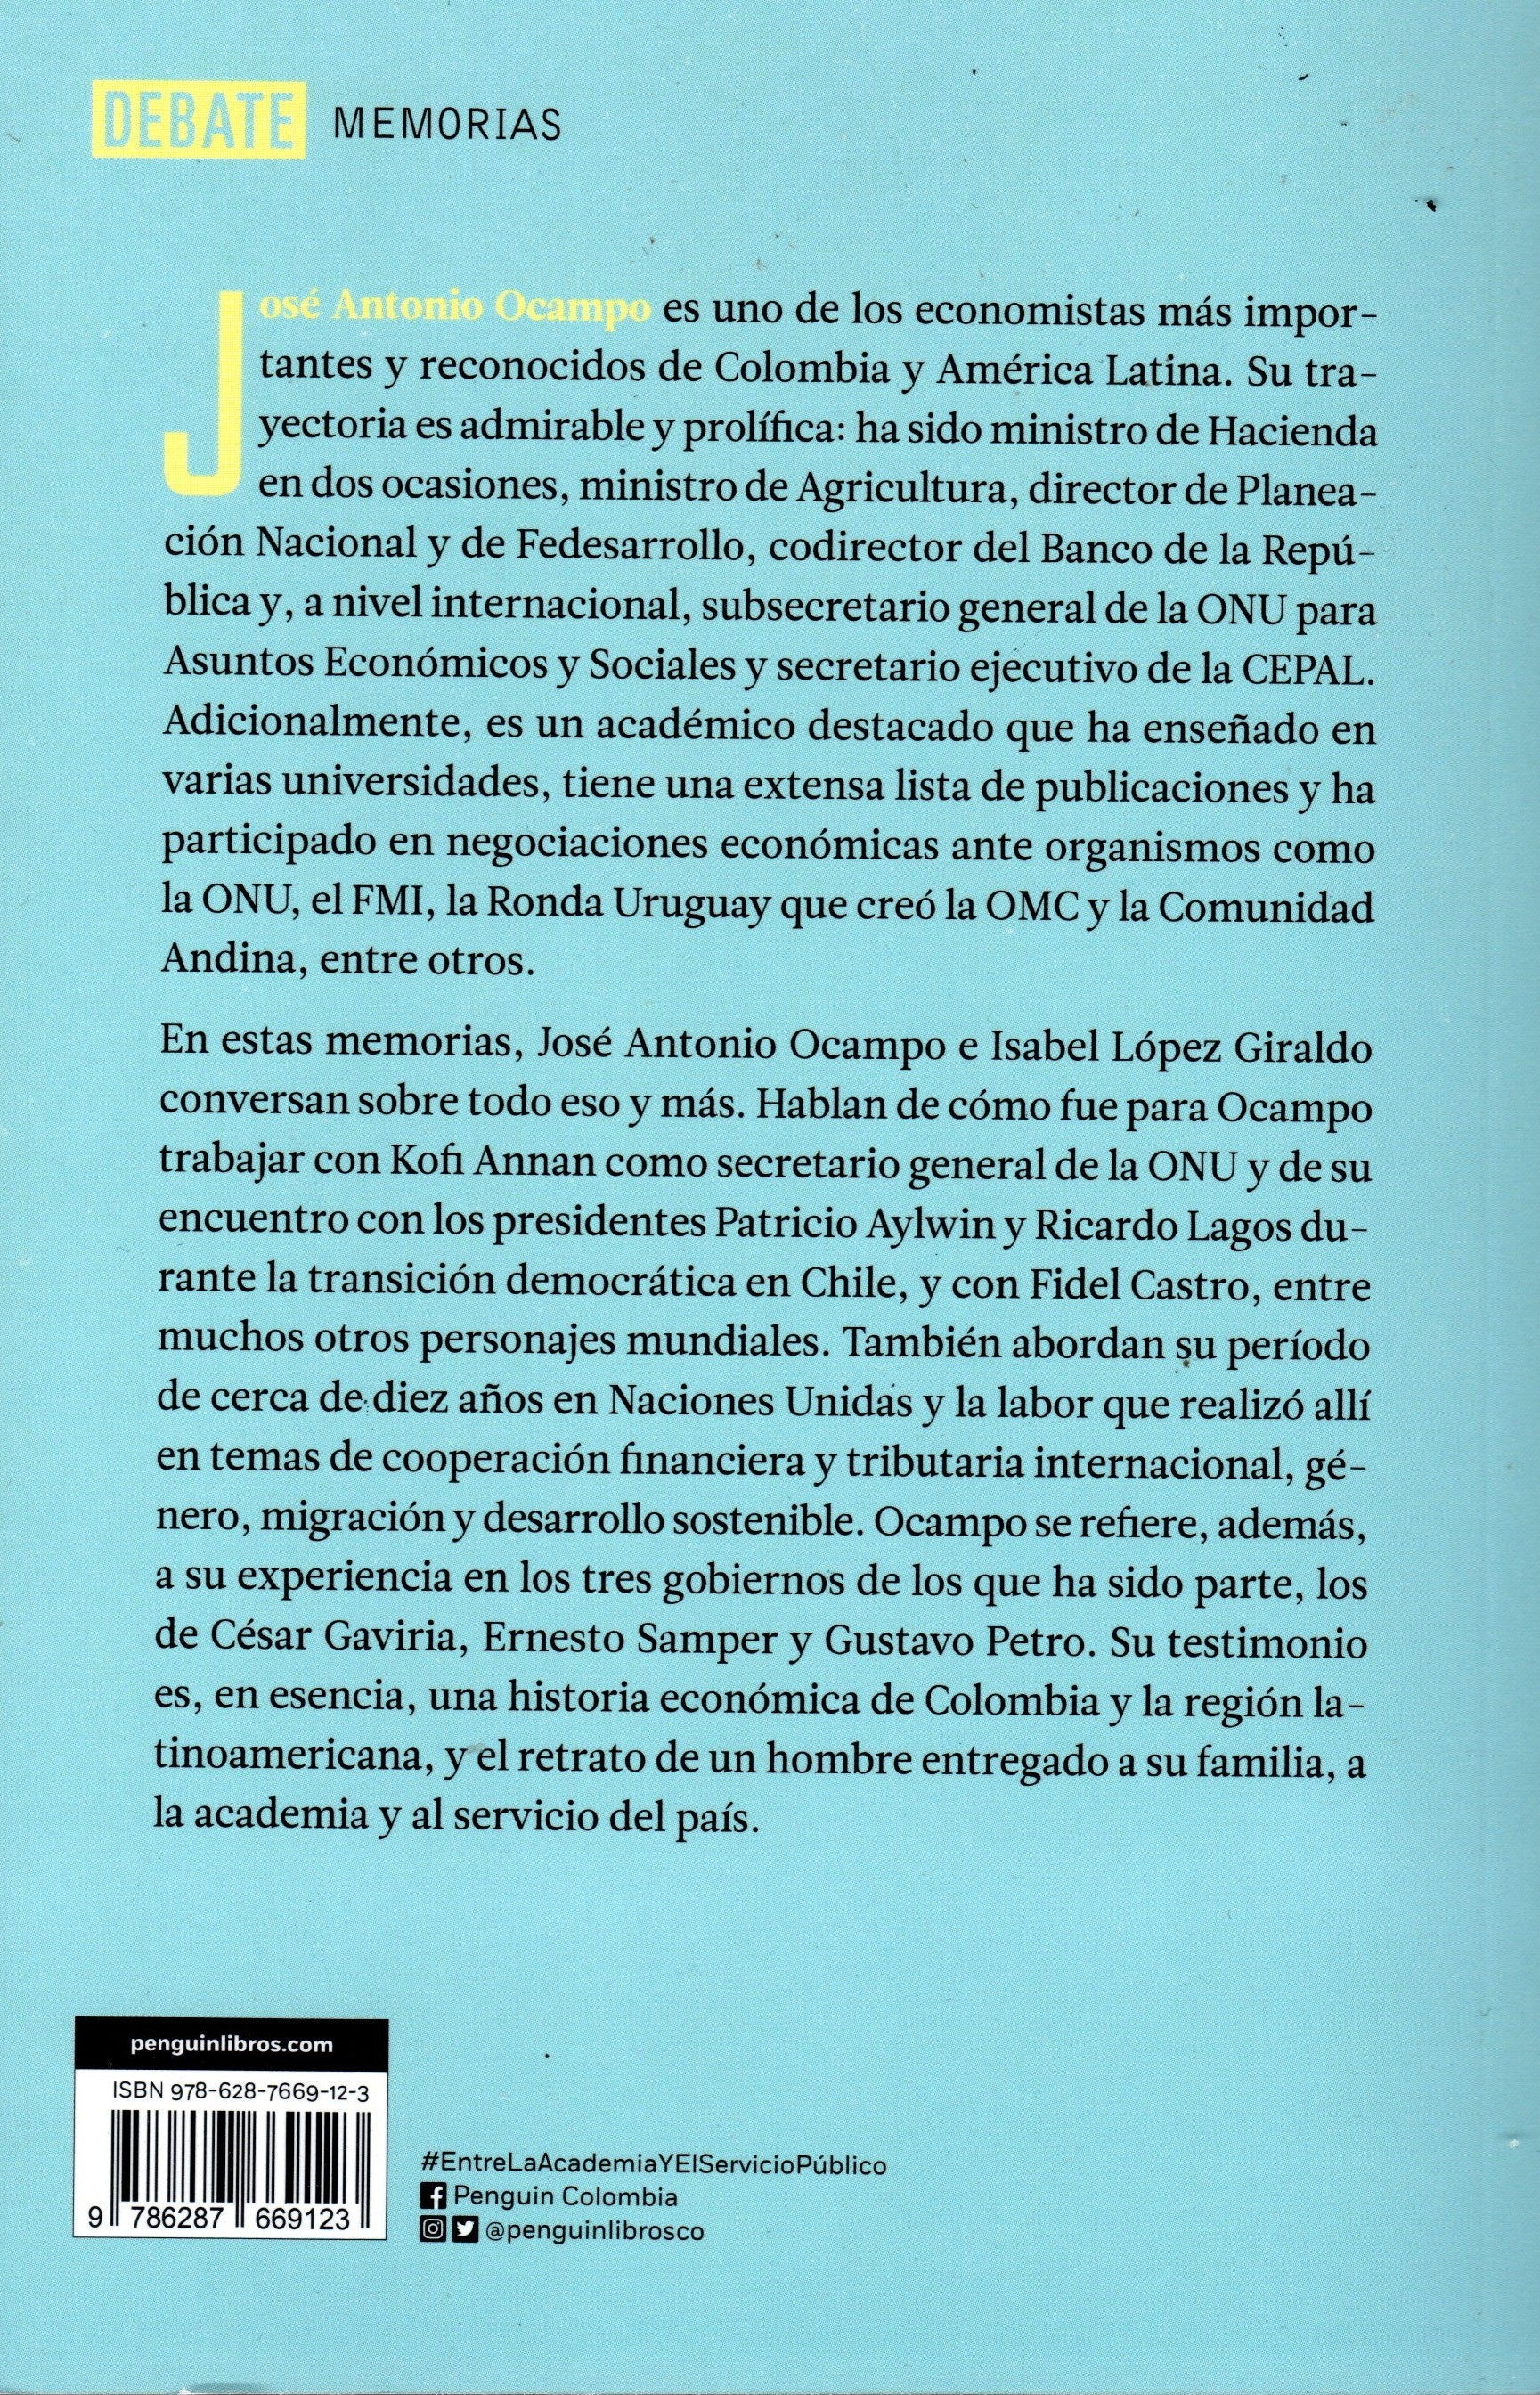 Libro Isabel López Giraldo / Jose Antonio Ocampo - José Antonio Ocampo. Entre la academia y el servicio público